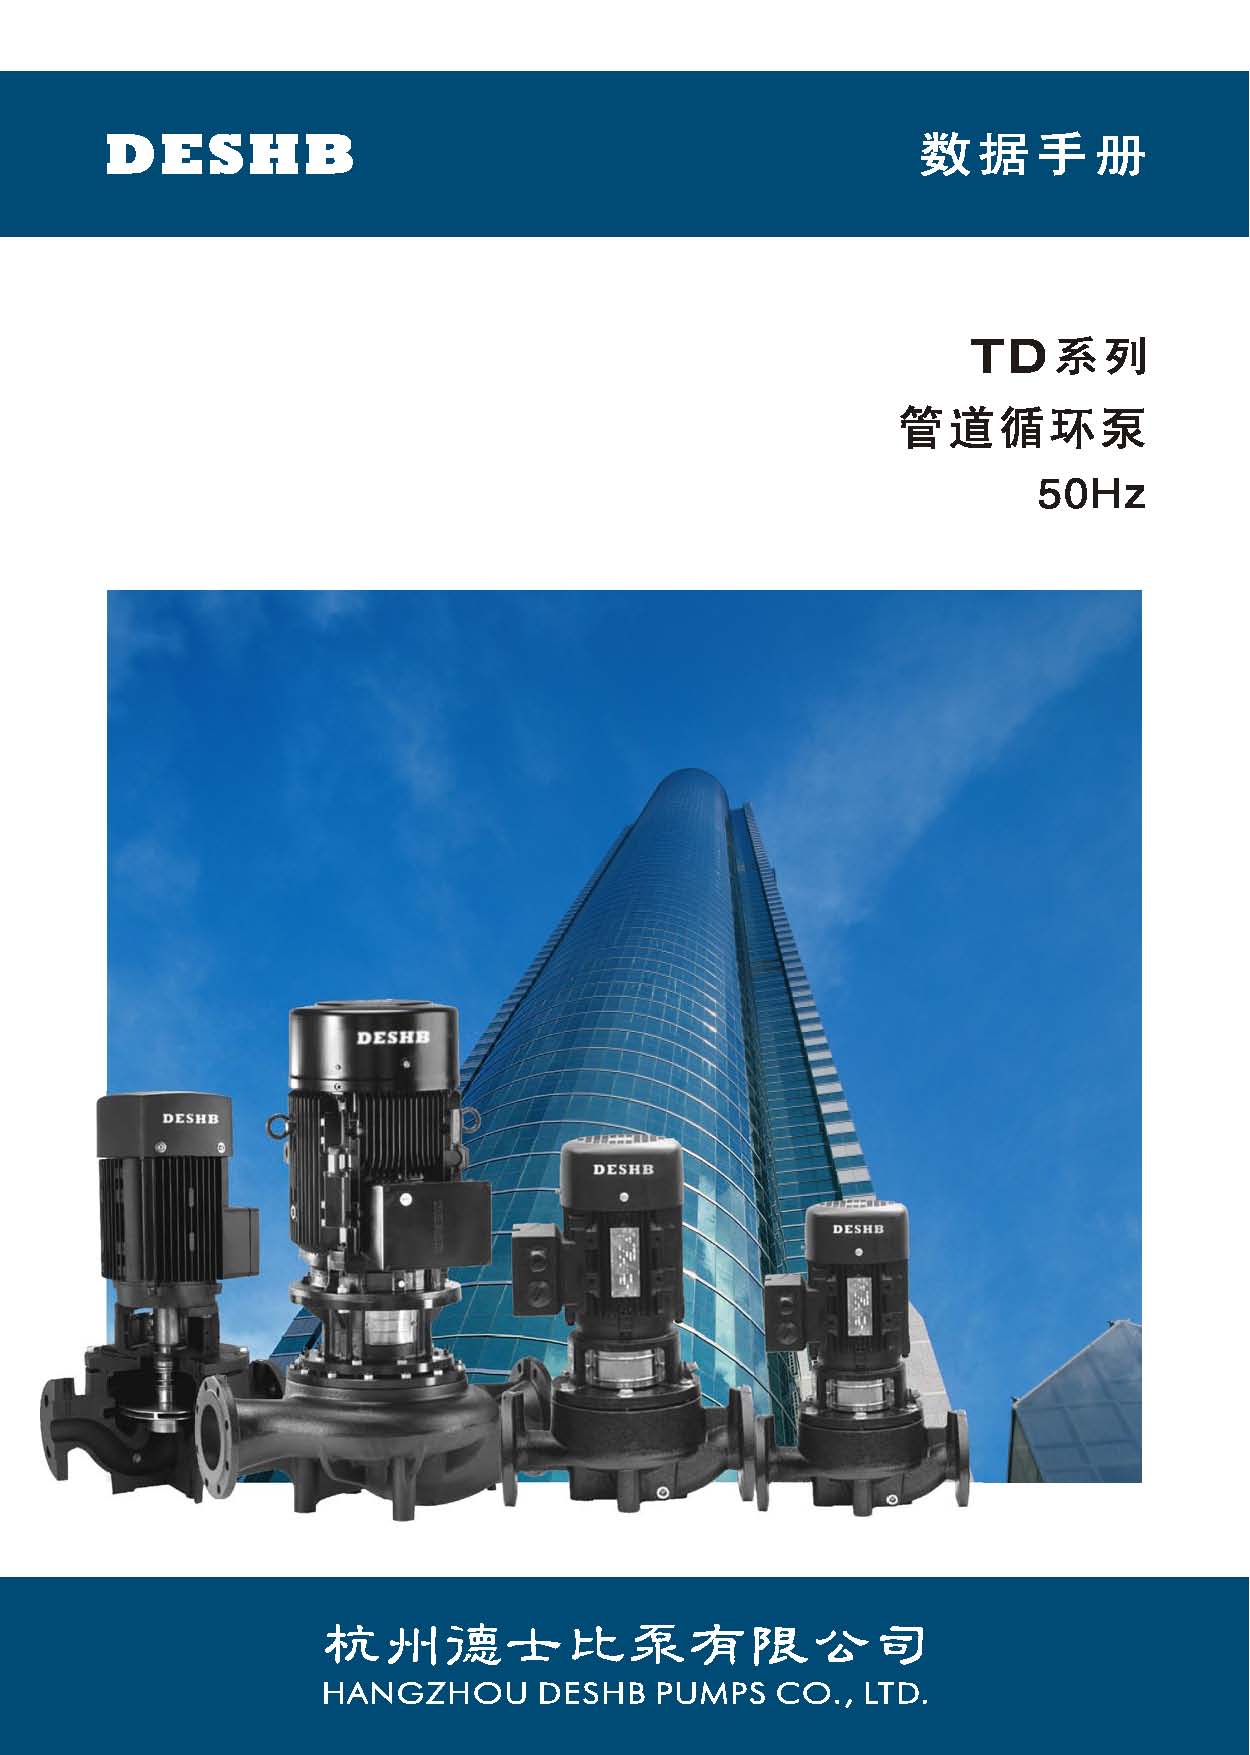 TD系列管道循环泵